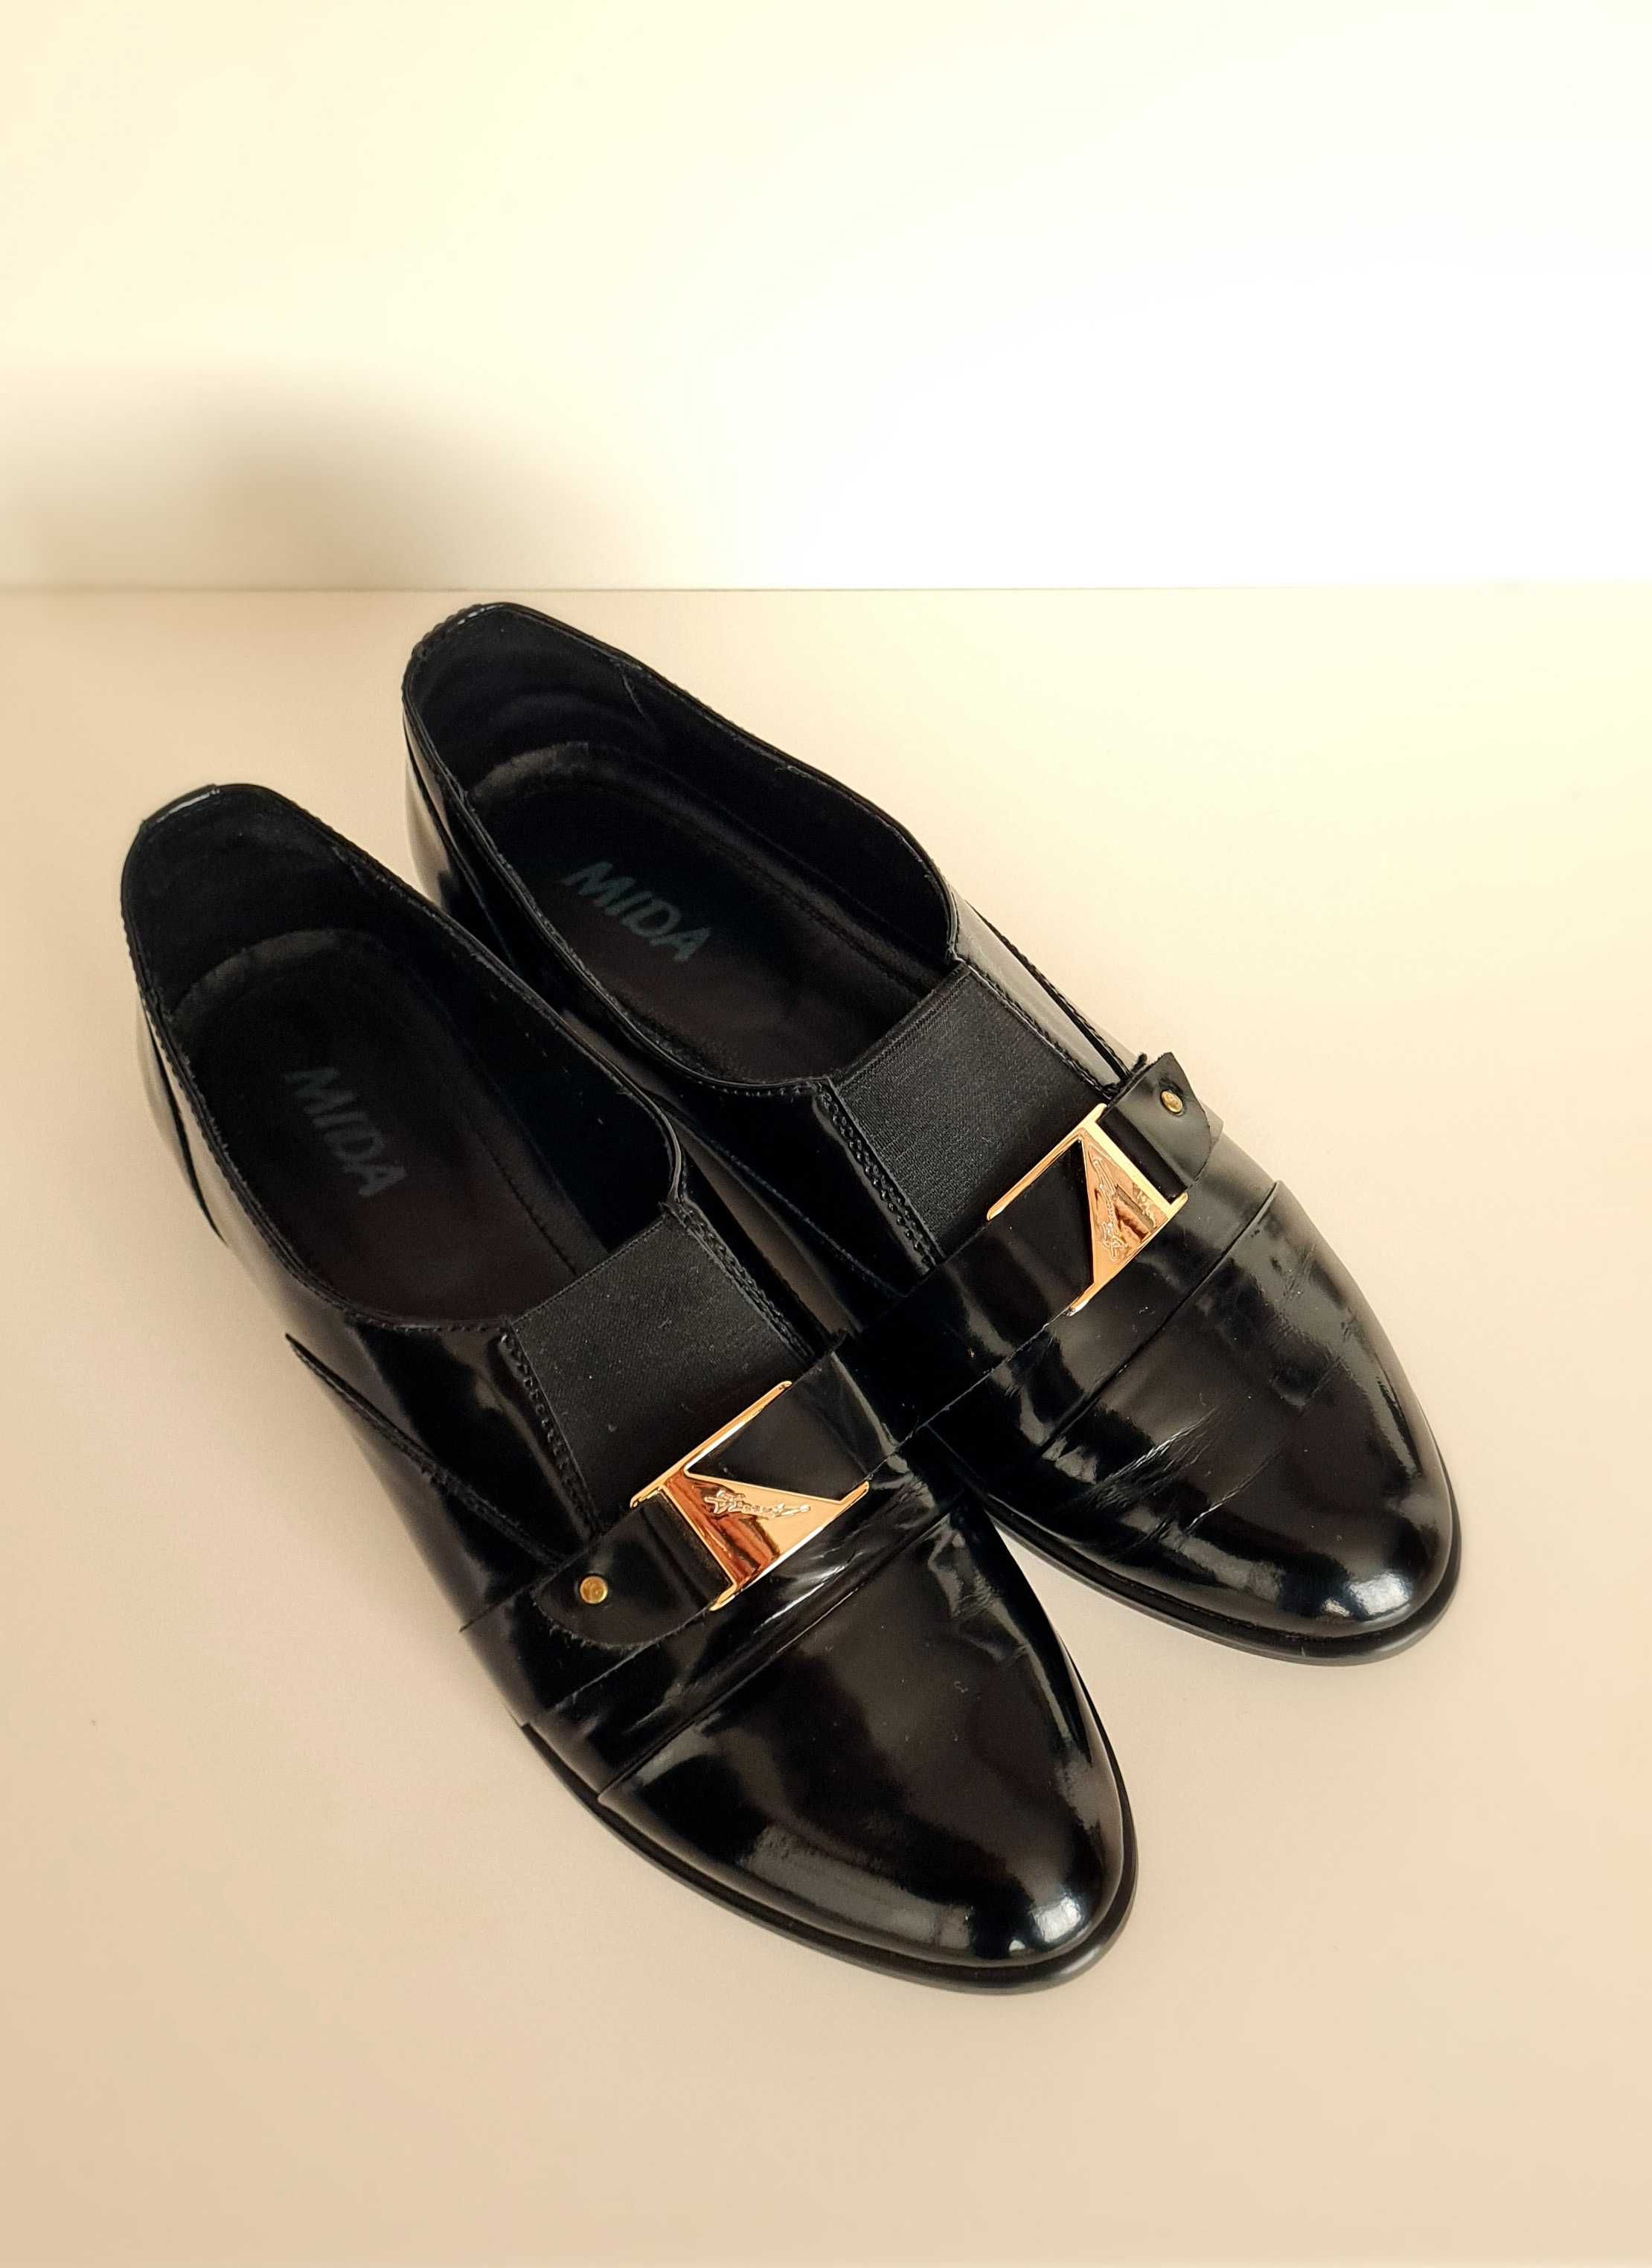 Туфли женские, лаковые без каблука | черные, кожа, размер 38